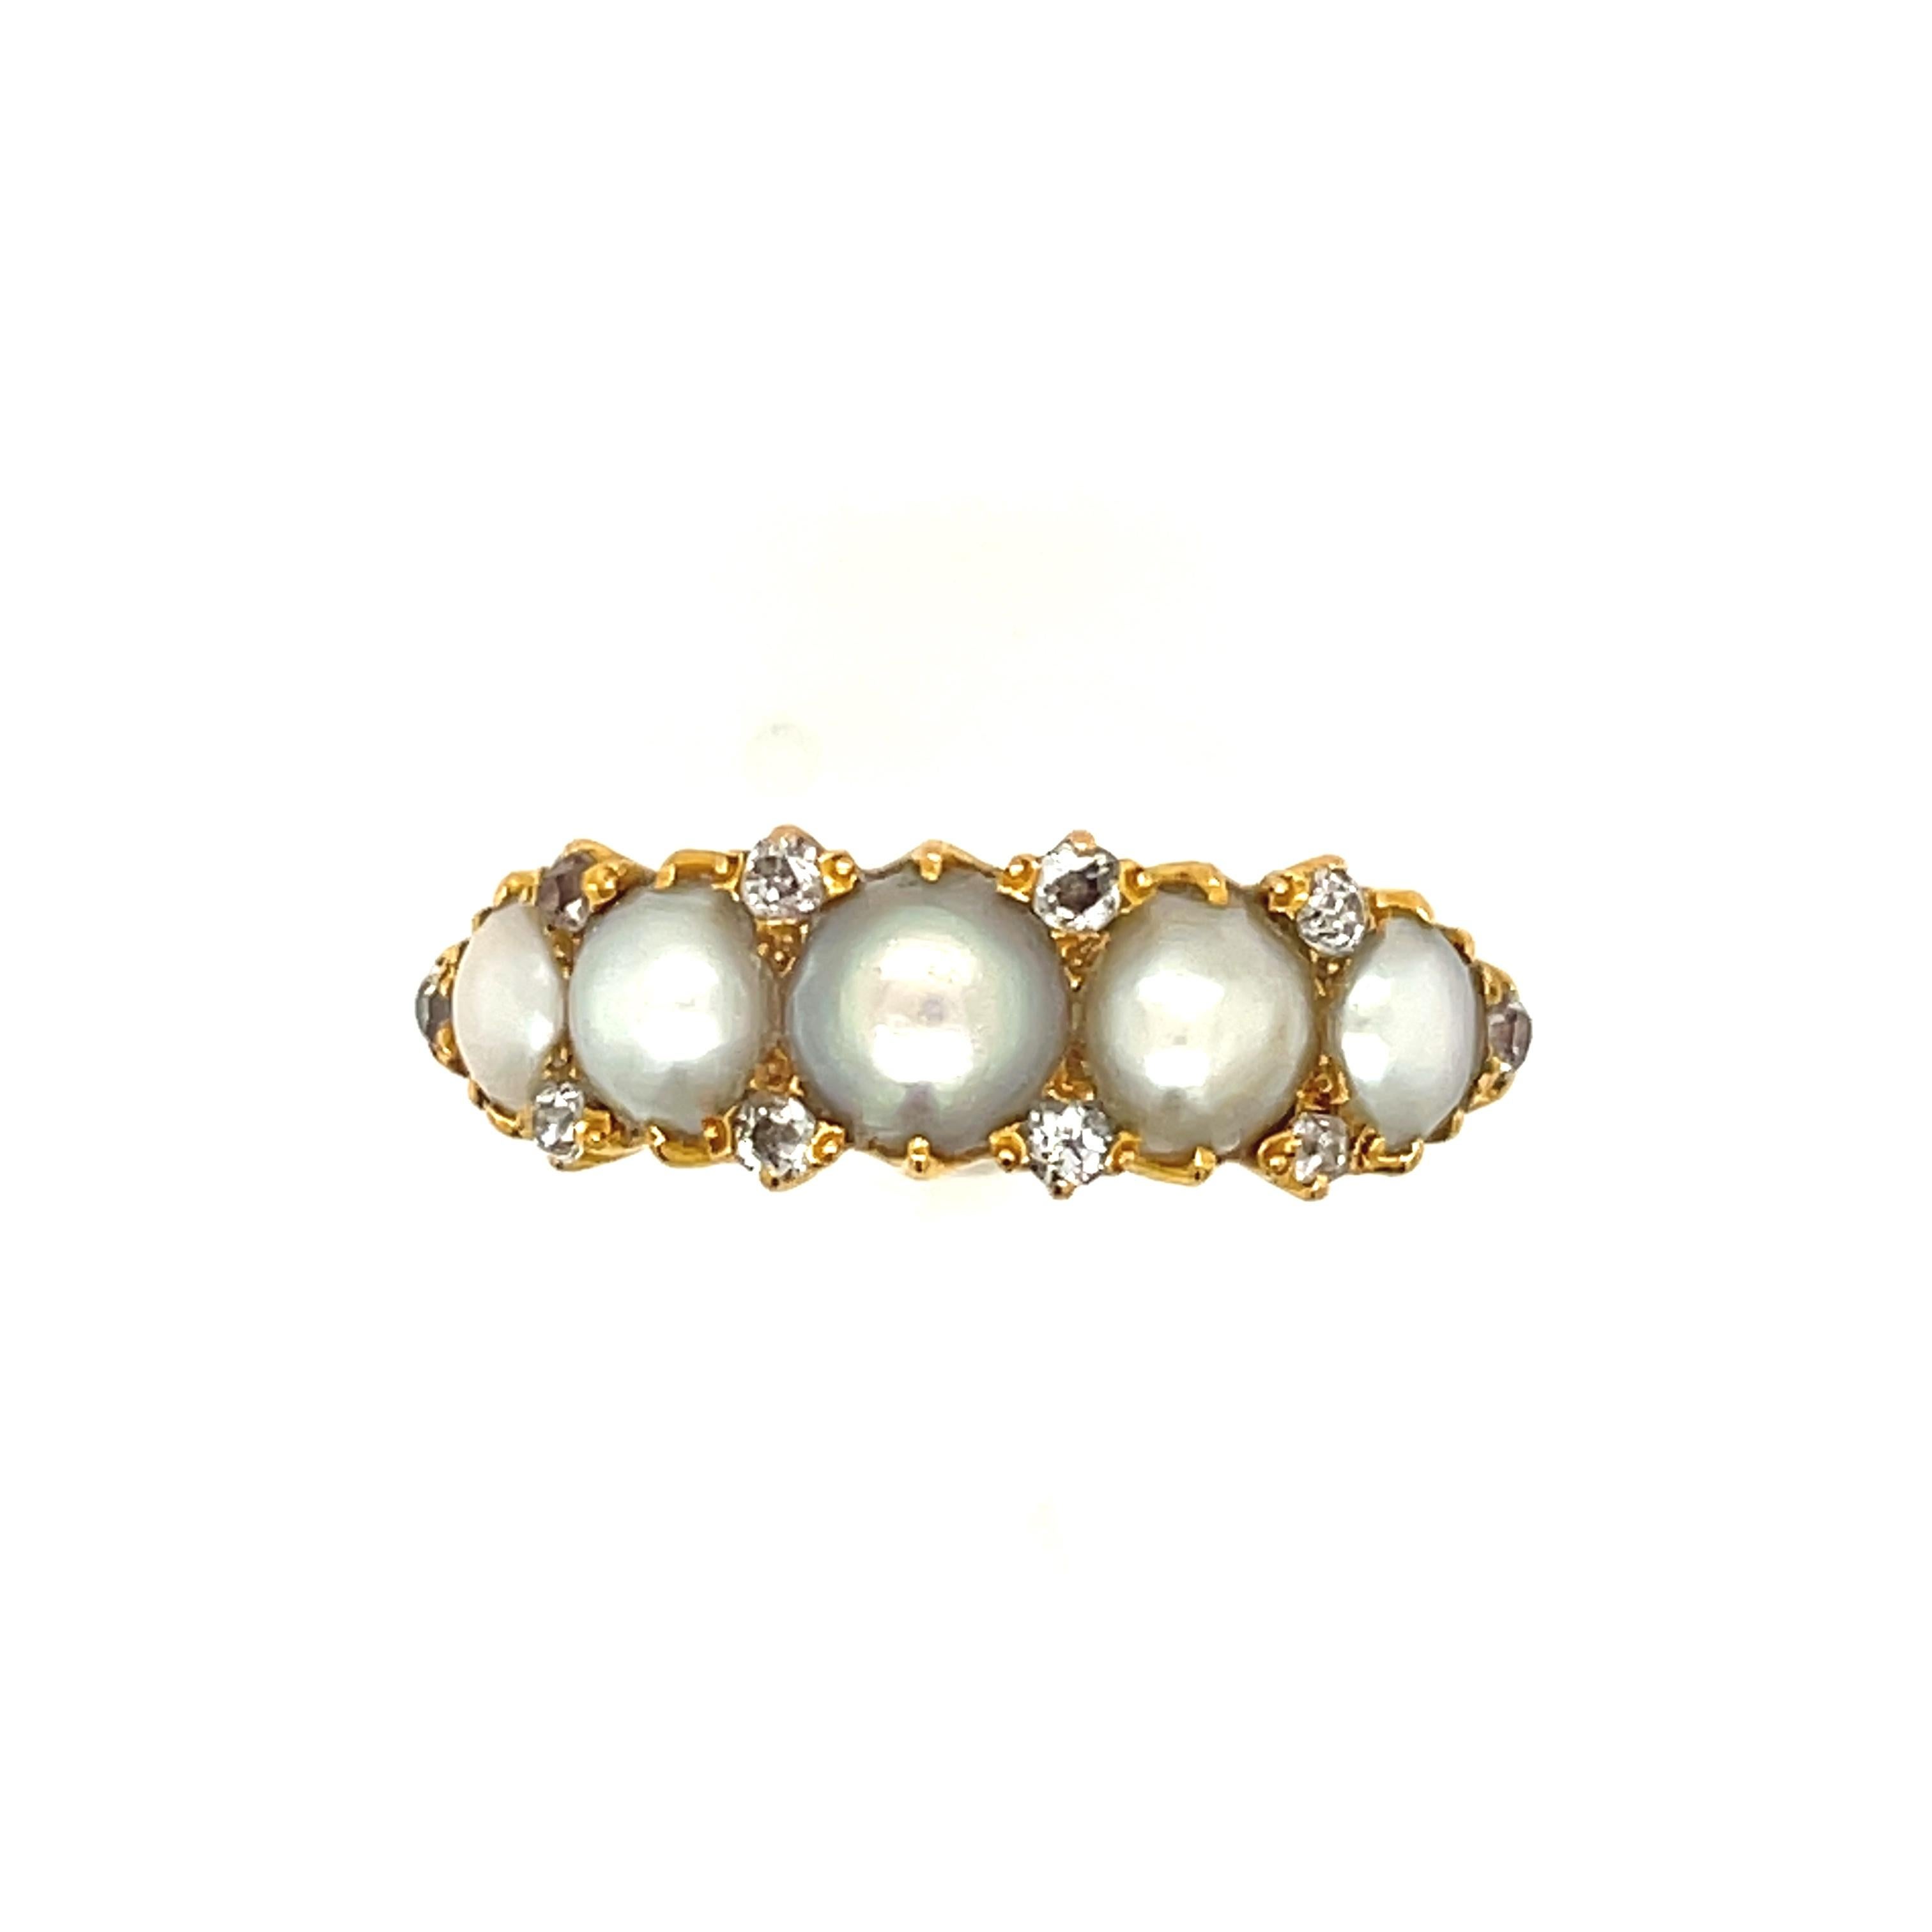 Ein breiter antiker viktorianischer Ring mit fünf Perlen und Diamanten, um 1880. Die Perlen sind wahrscheinlich naturbelassen und werden für die Herstellung des Rings geteilt. Die Perlen haben einen schönen cremeweißen Schimmer mit vielleicht einem